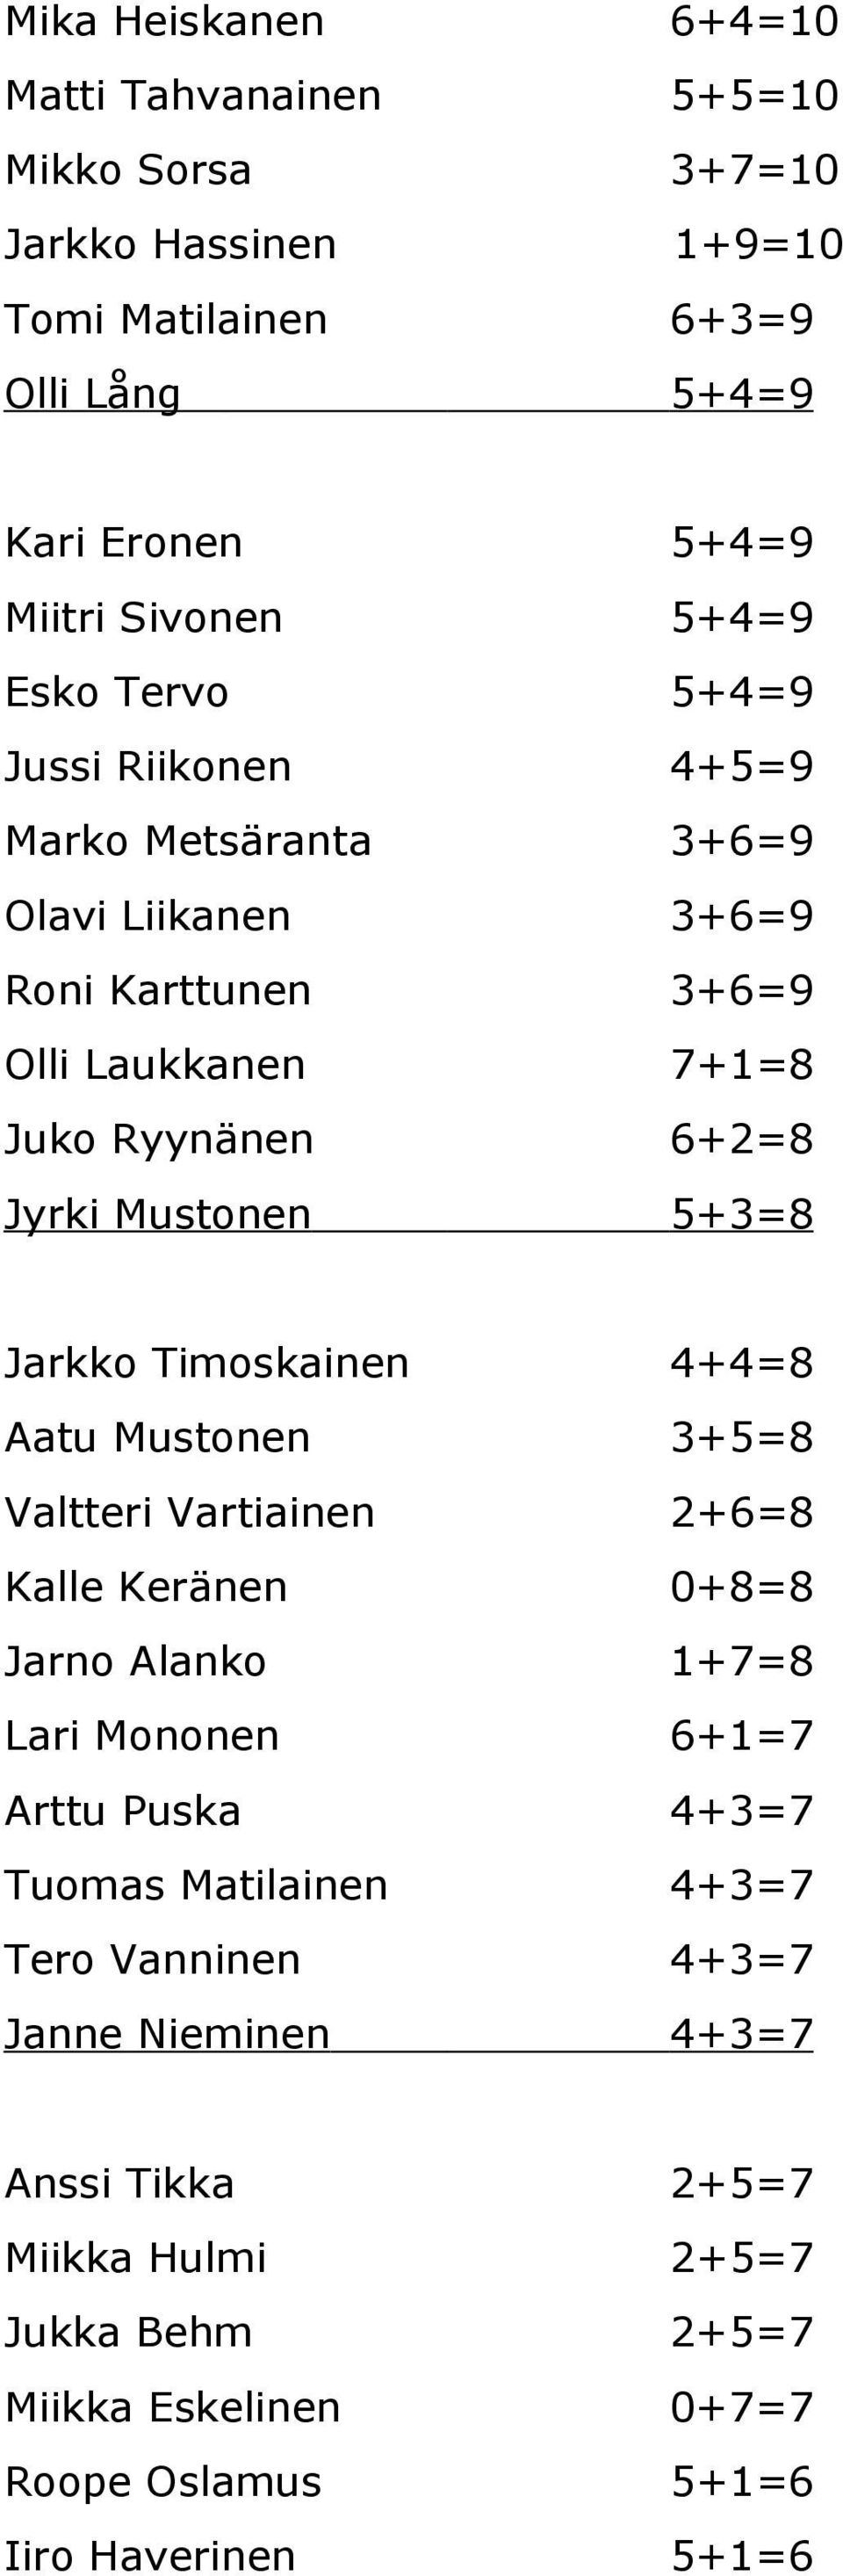 5+3=8 Jarkko Timoskainen 4+4=8 Aatu Mustonen 3+5=8 Valtteri Vartiainen 2+6=8 Kalle Keränen 0+8=8 Jarno Alanko 1+7=8 Lari Mononen 6+1=7 Arttu Puska 4+3=7 Tuomas